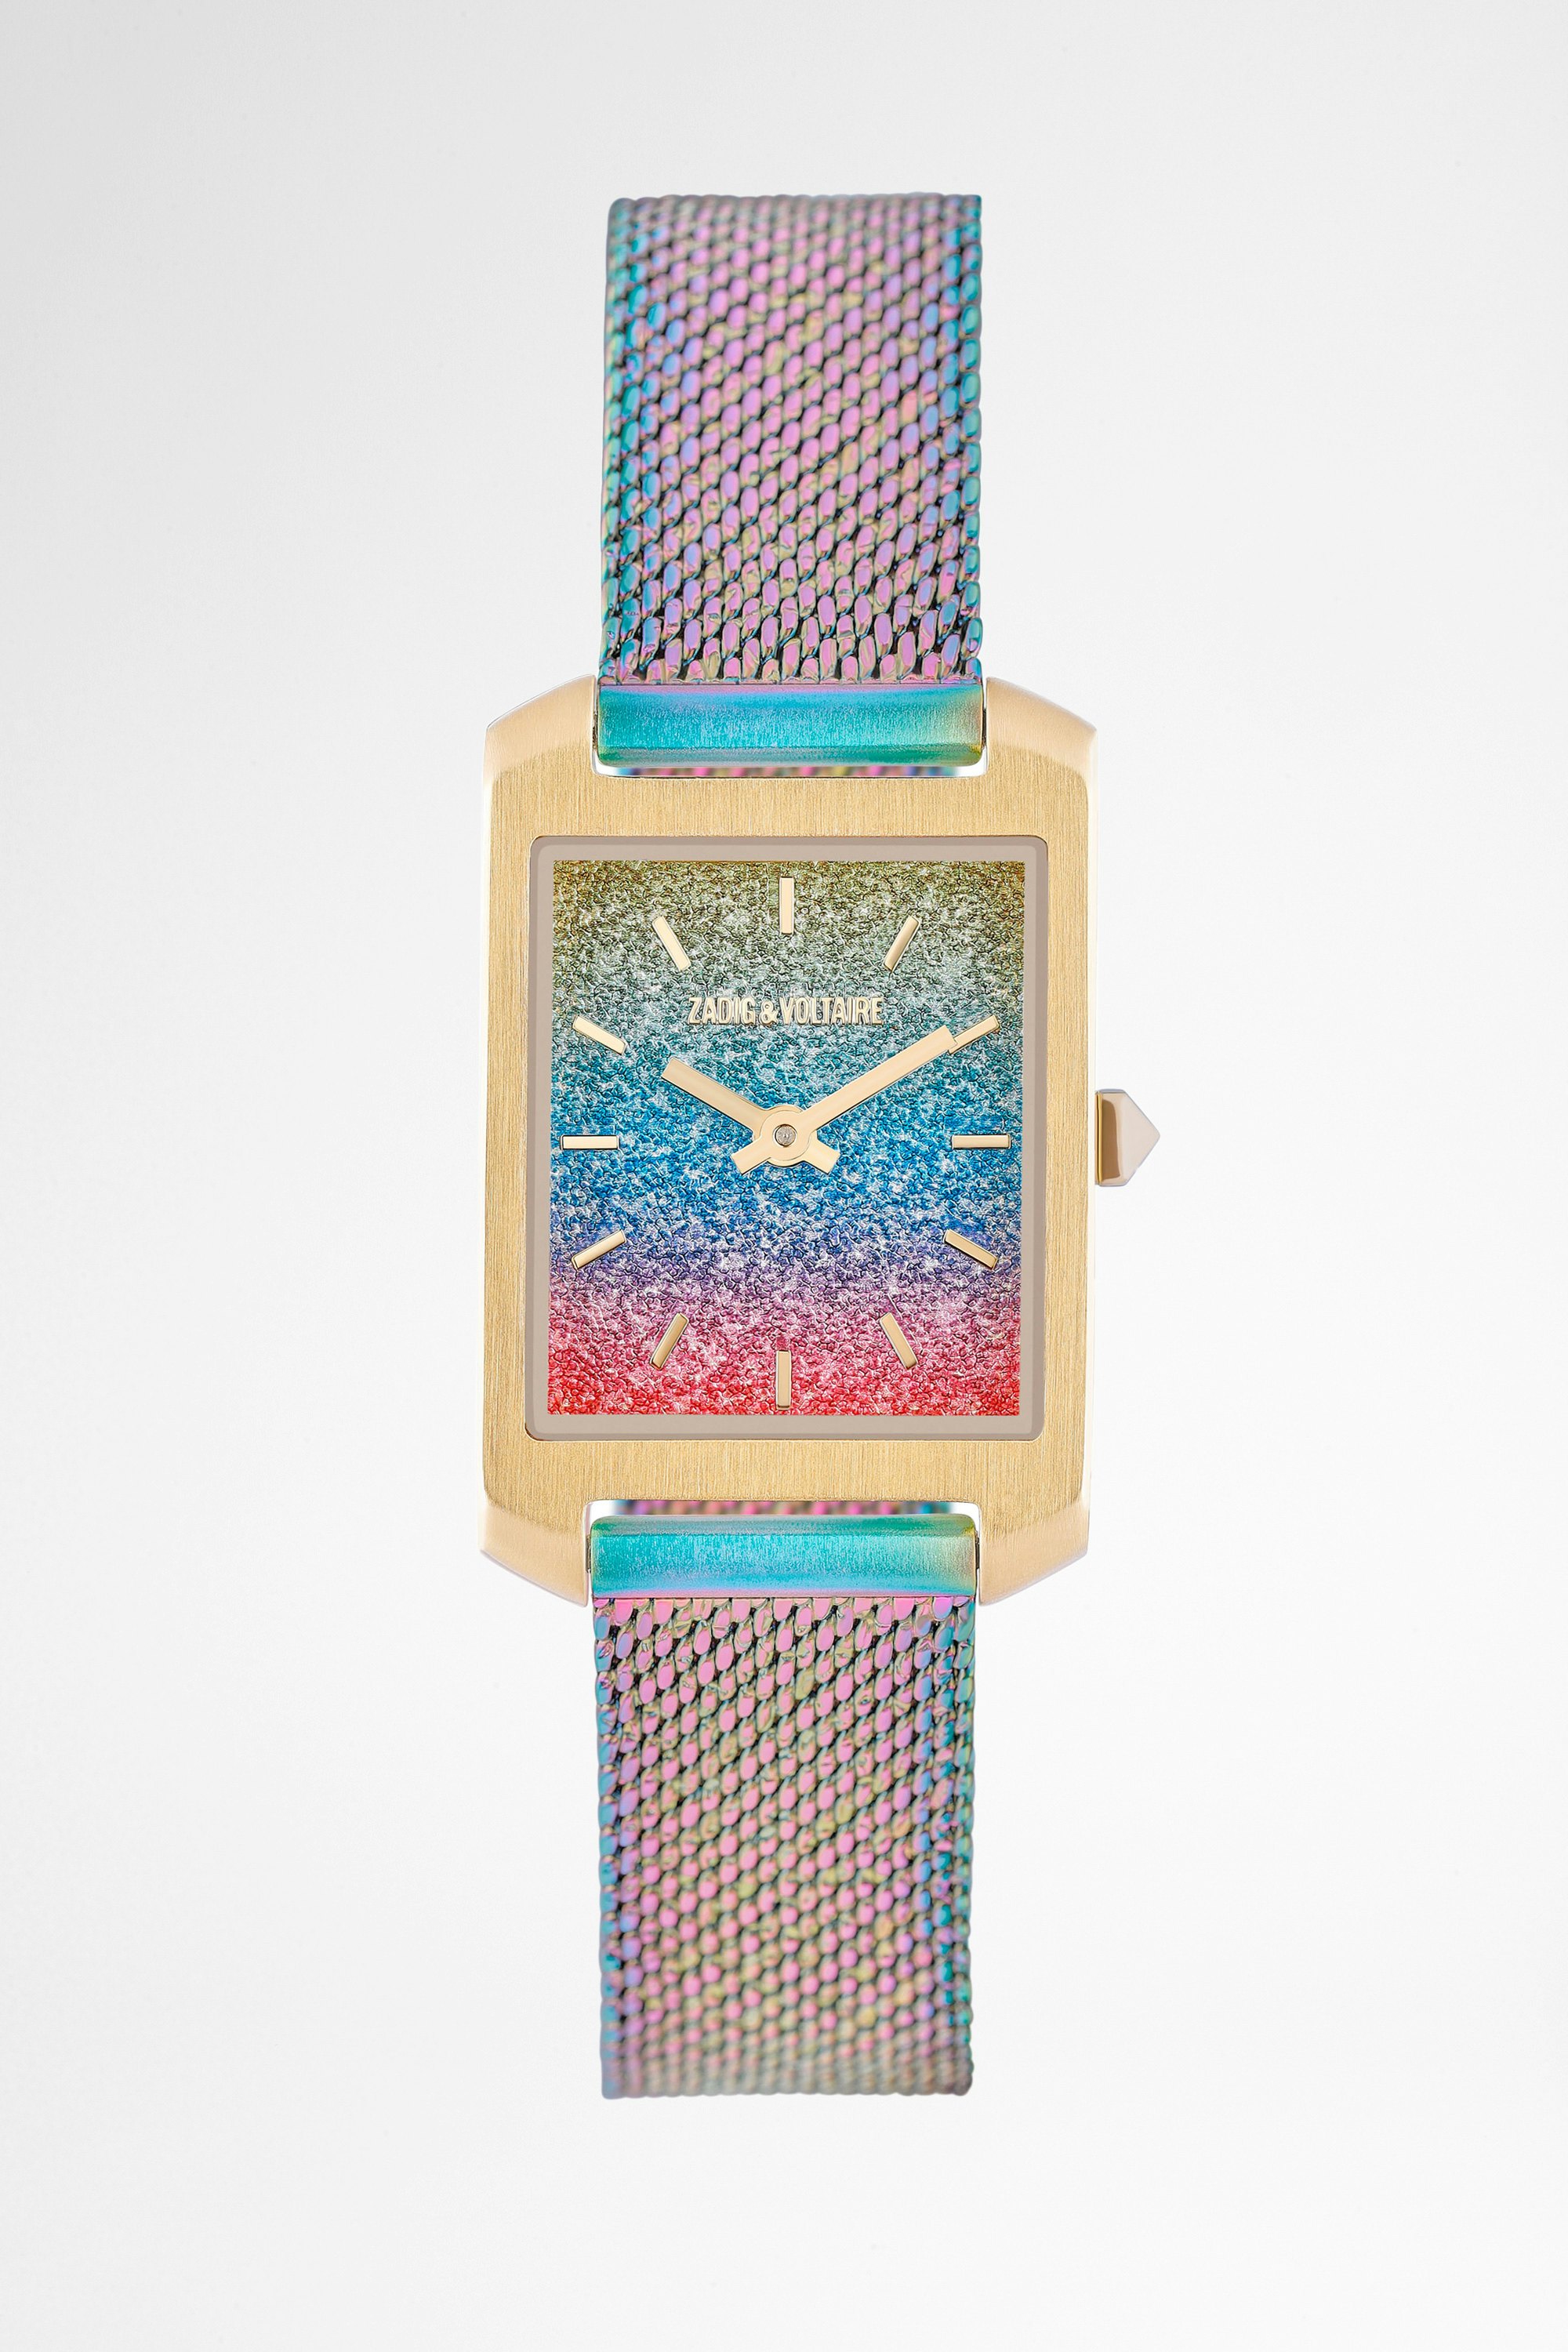 Timeline Tie&Dye Watch Women's steel tie&dye watch